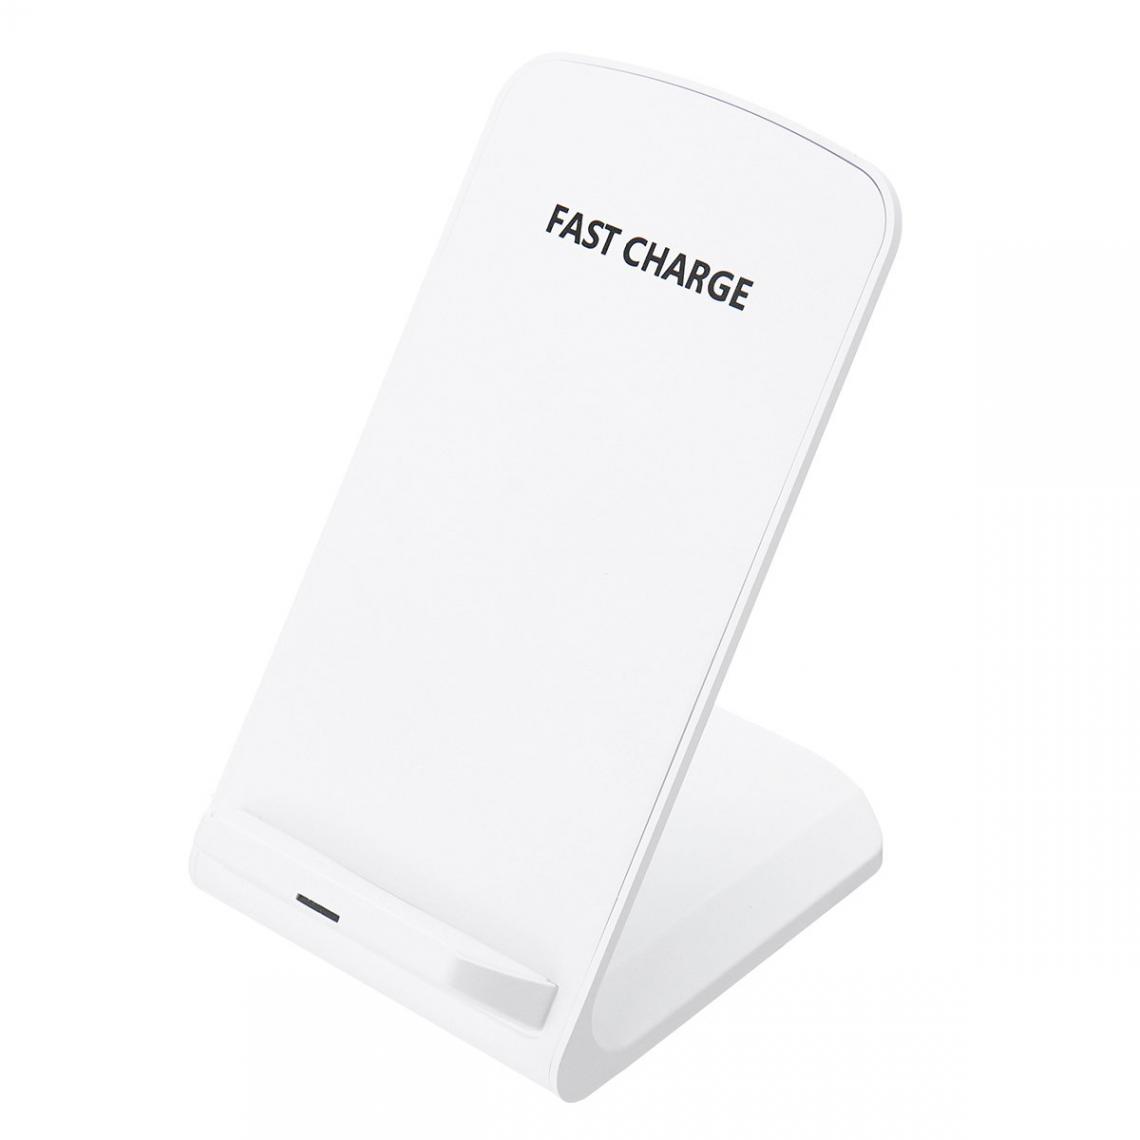 Justgreenbox - Chargeur rapide de support de charge sans fil Qi 10W, Blanc - Chargeurs de piles